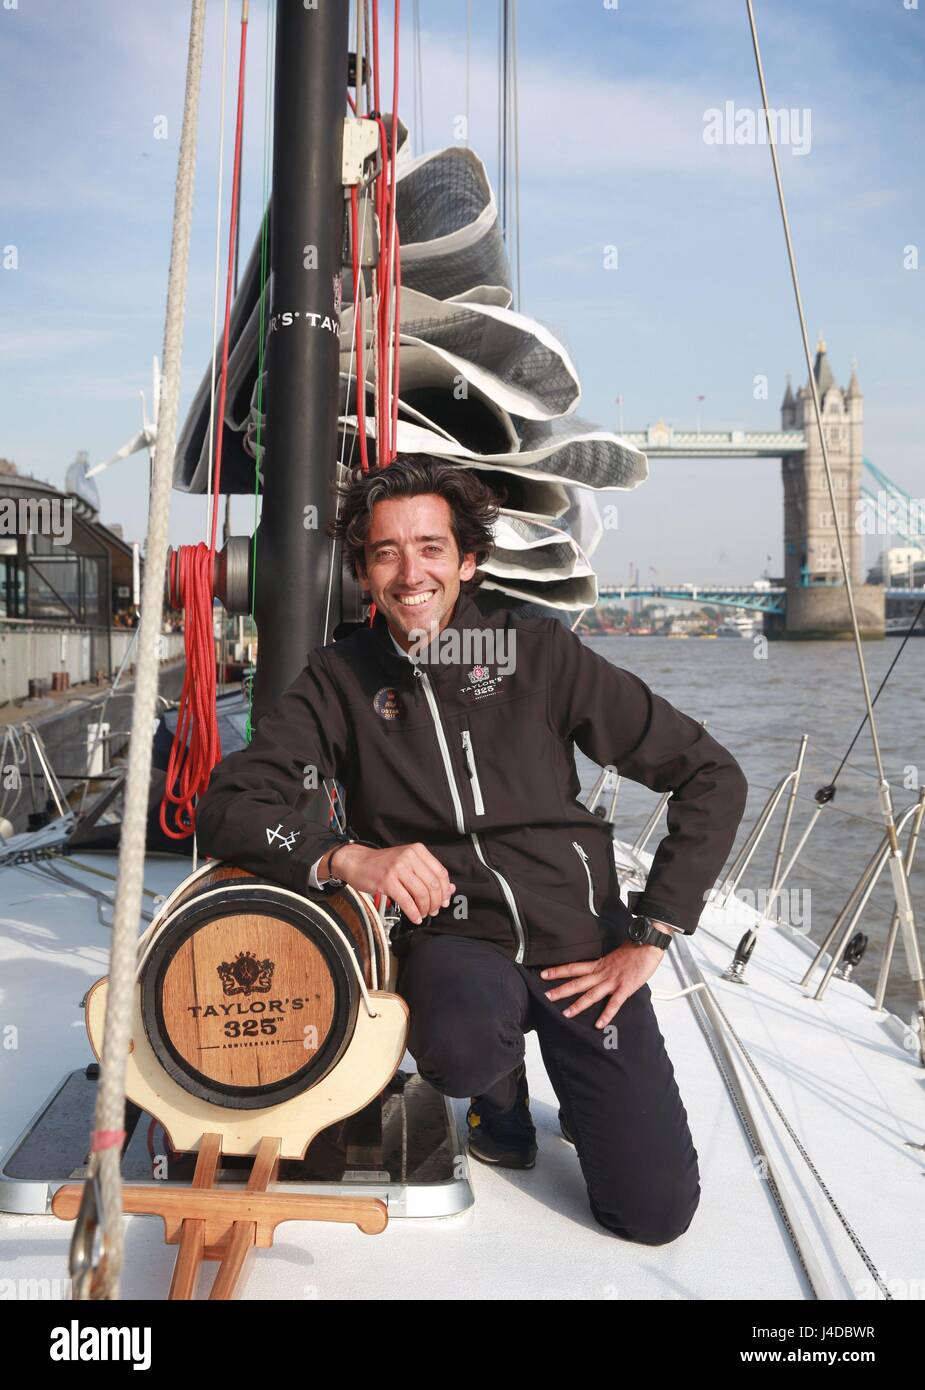 Solo marinero, Ricardo Diniz navega el yate Taylor325 a través del Tower Bridge, que ha sido levantado especialmente, ya que recrea el primer envío del Puerto de Taylor a Londres en celebración del 325th aniversario de las marcas. Foto de stock